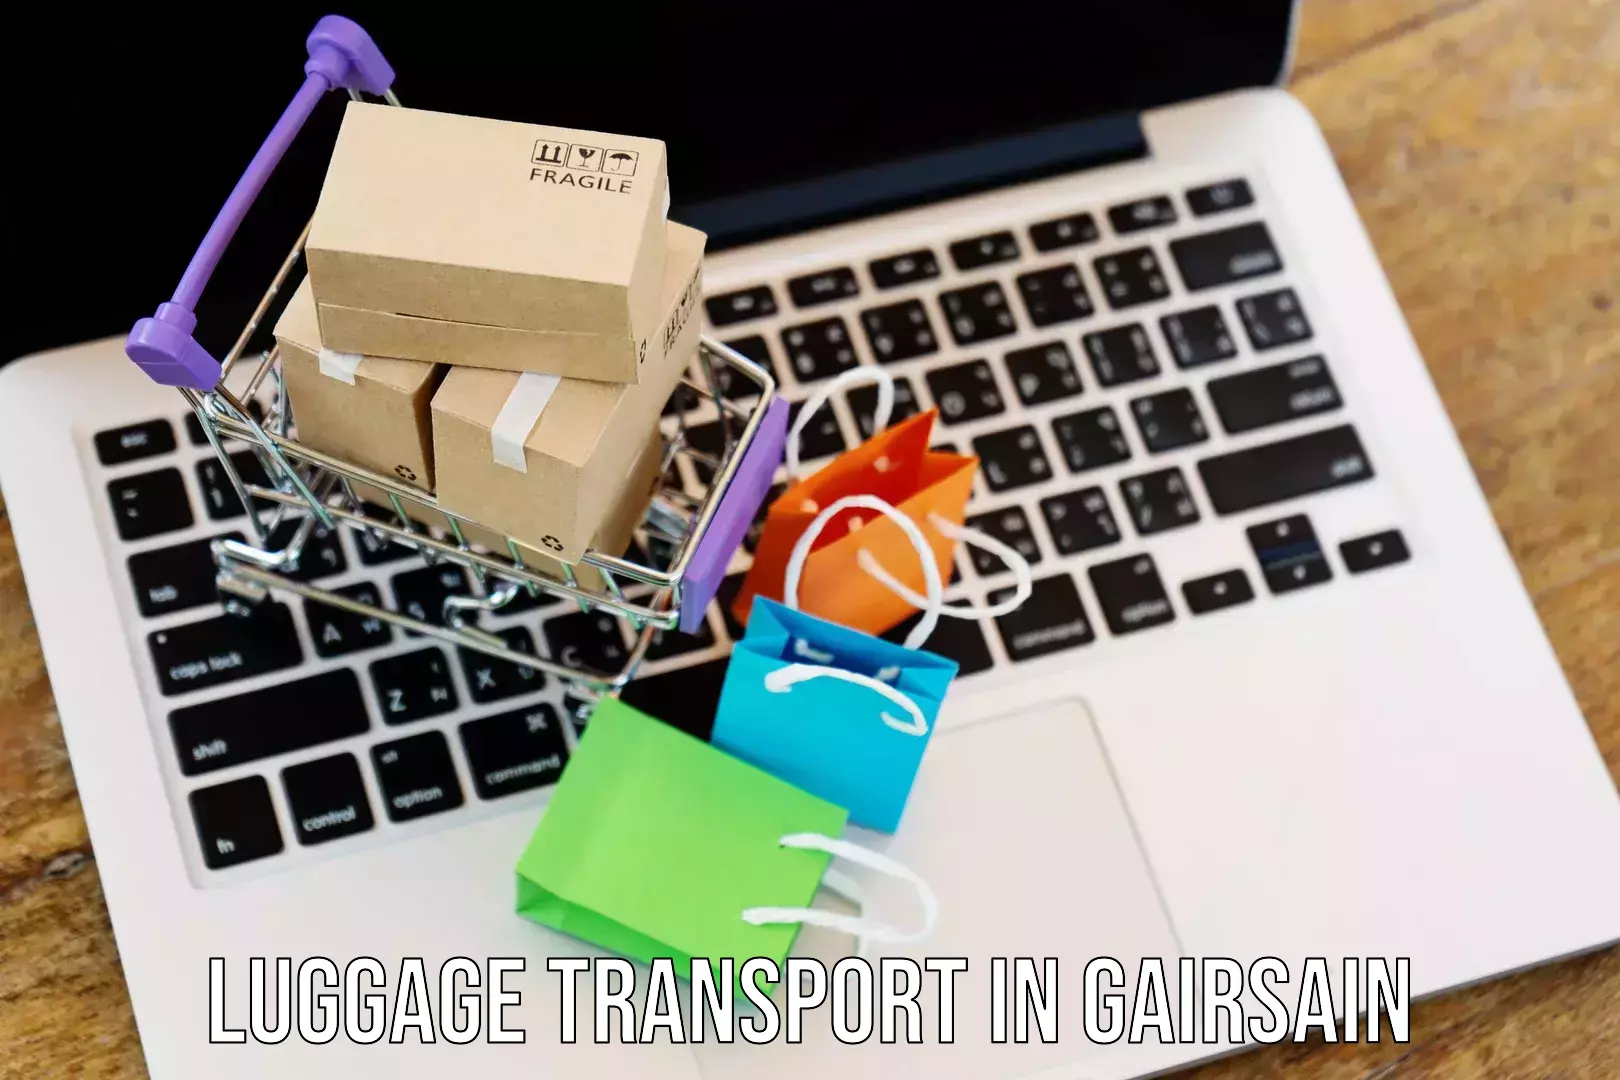 Luggage transit service in Gairsain